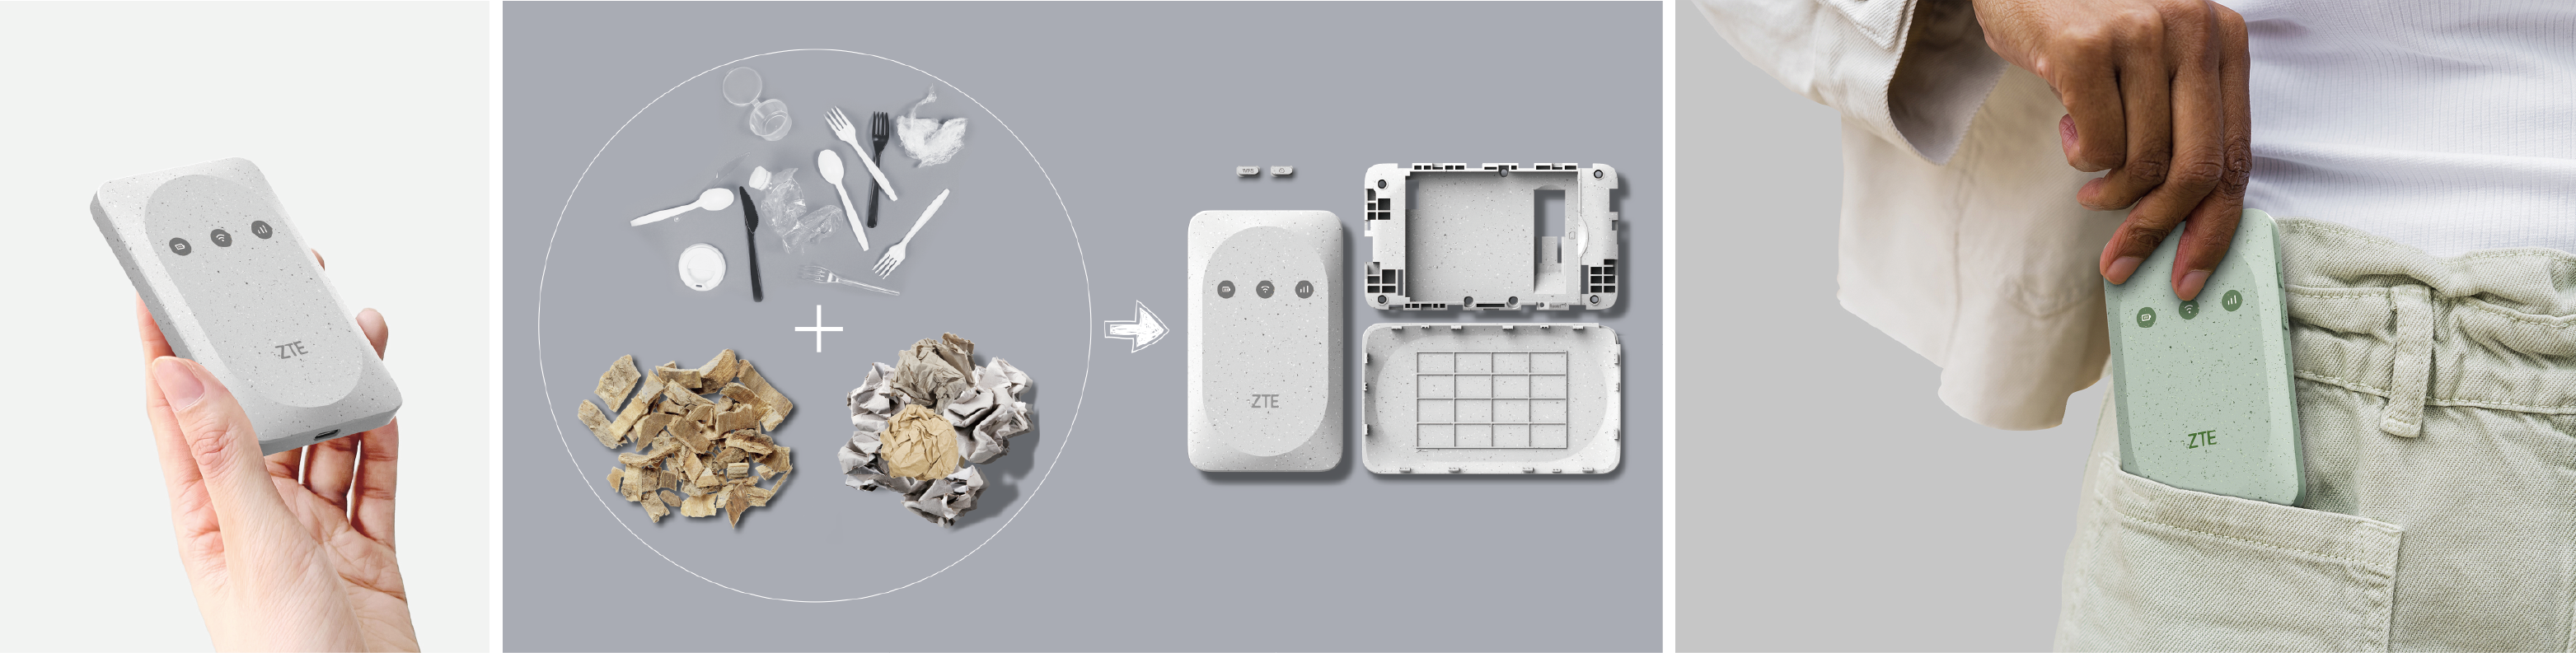 2023年iF設計獎獲獎作品ZTE Pocket WiFi | 移動 WiFi 路由器